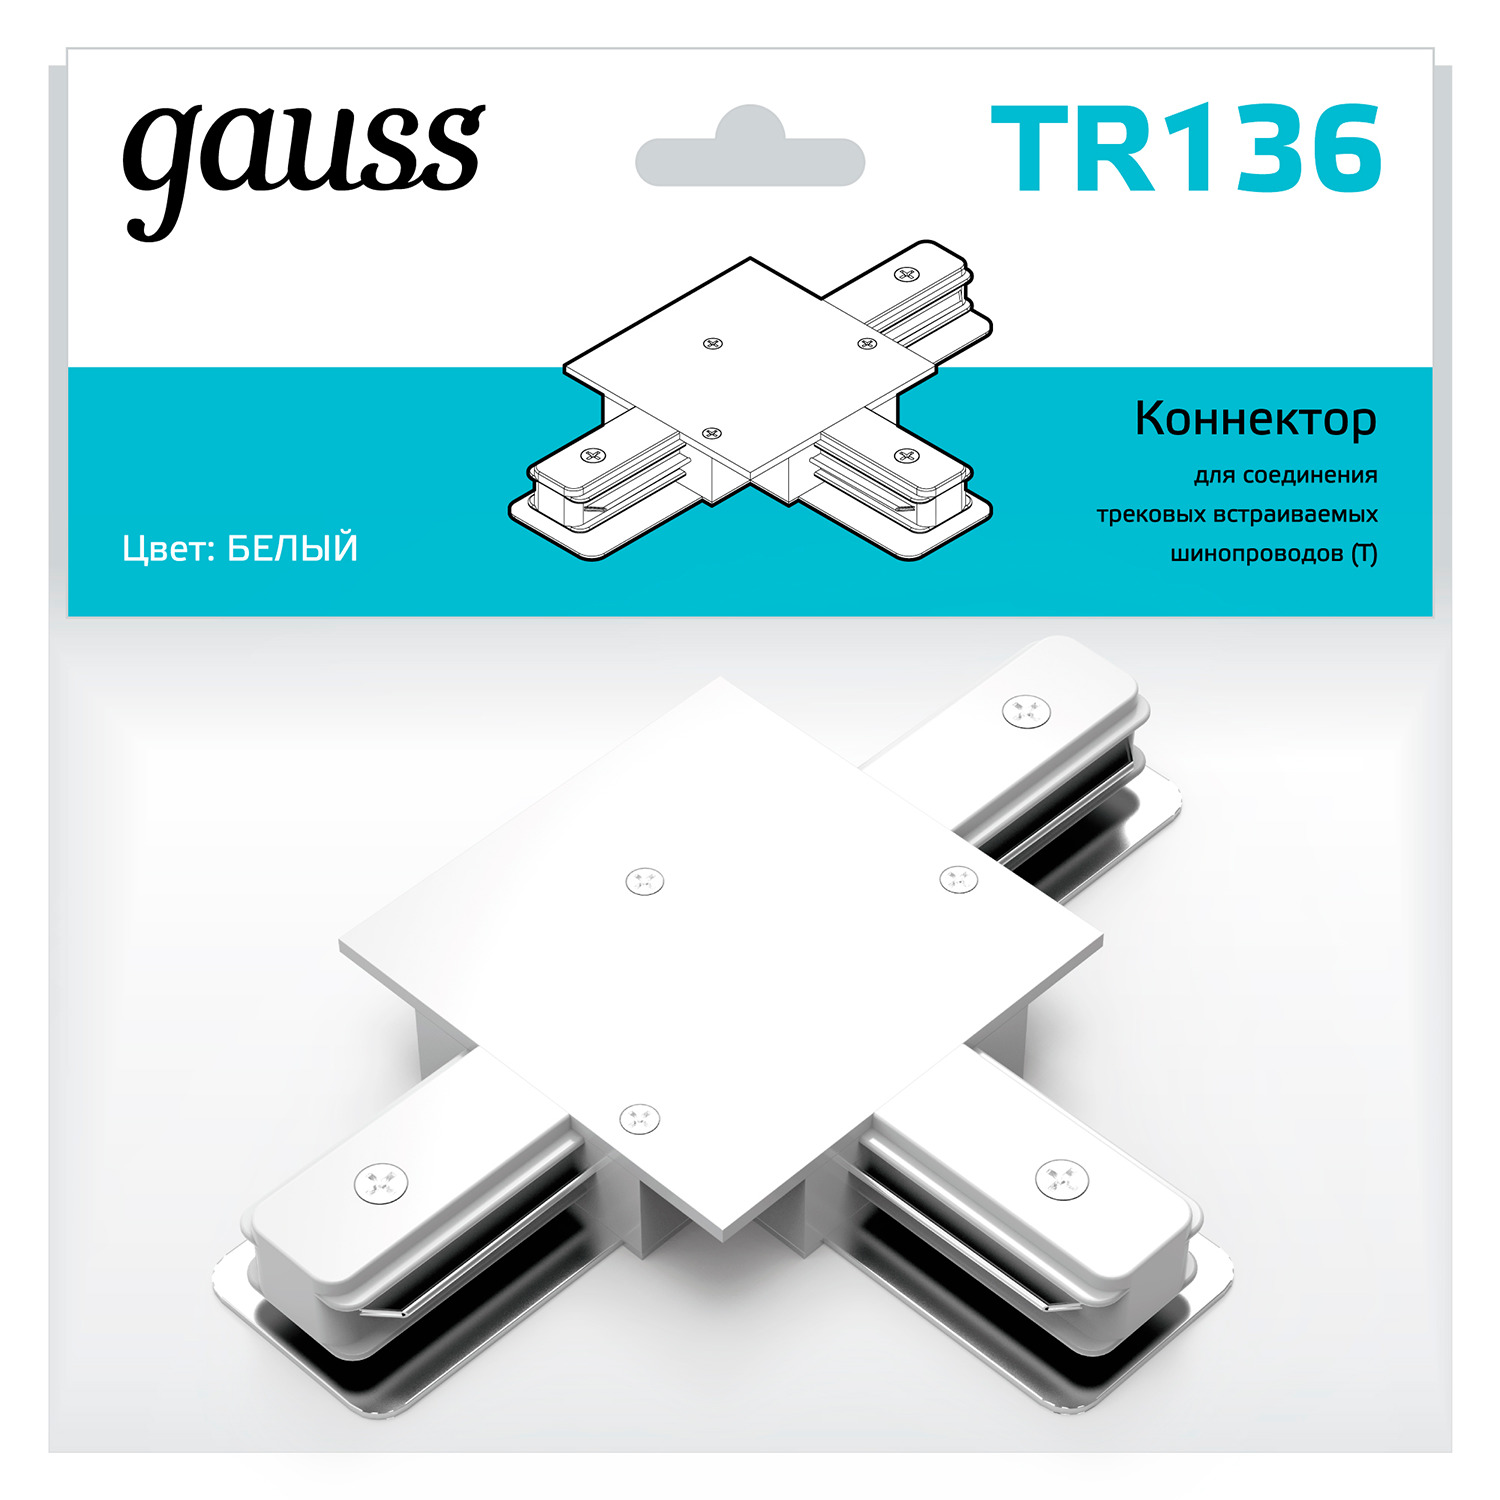 цена Коннектор Gauss для встраиваемых трековых шинопроводов (T) белый